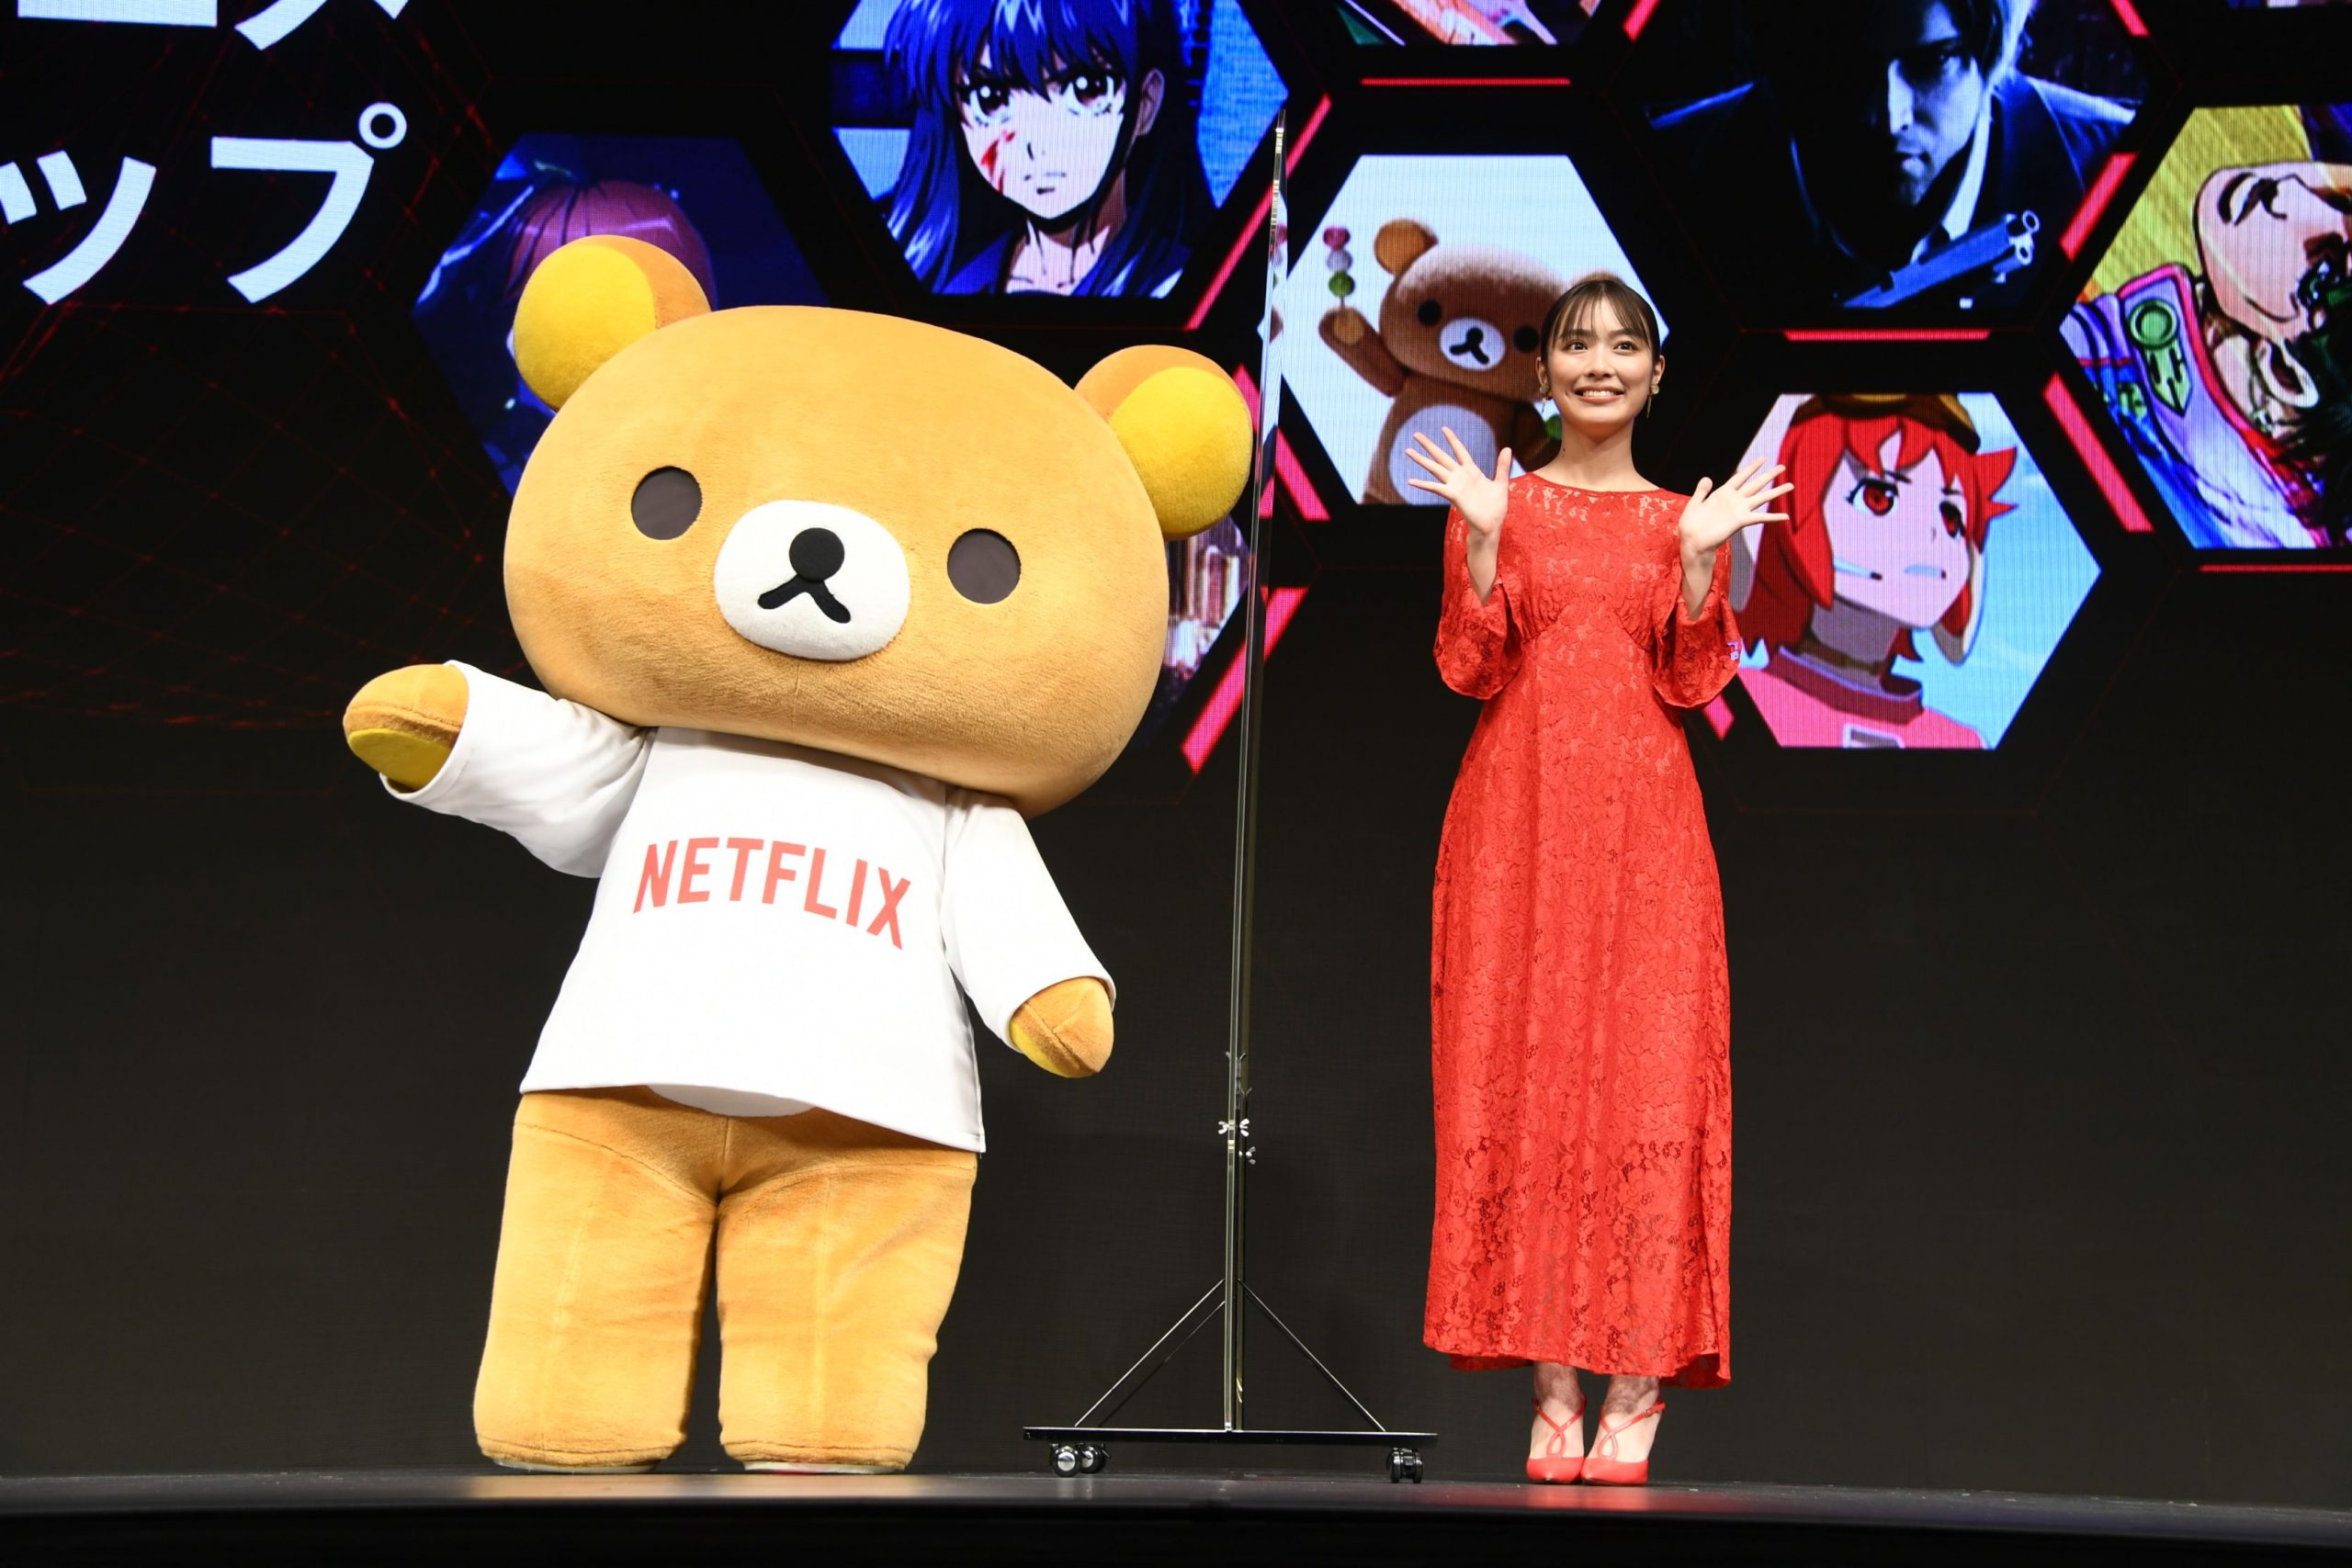 Rilakkuma e Kaoru estrelarão uma nova série de animação na Netflix ambientada no parque temático